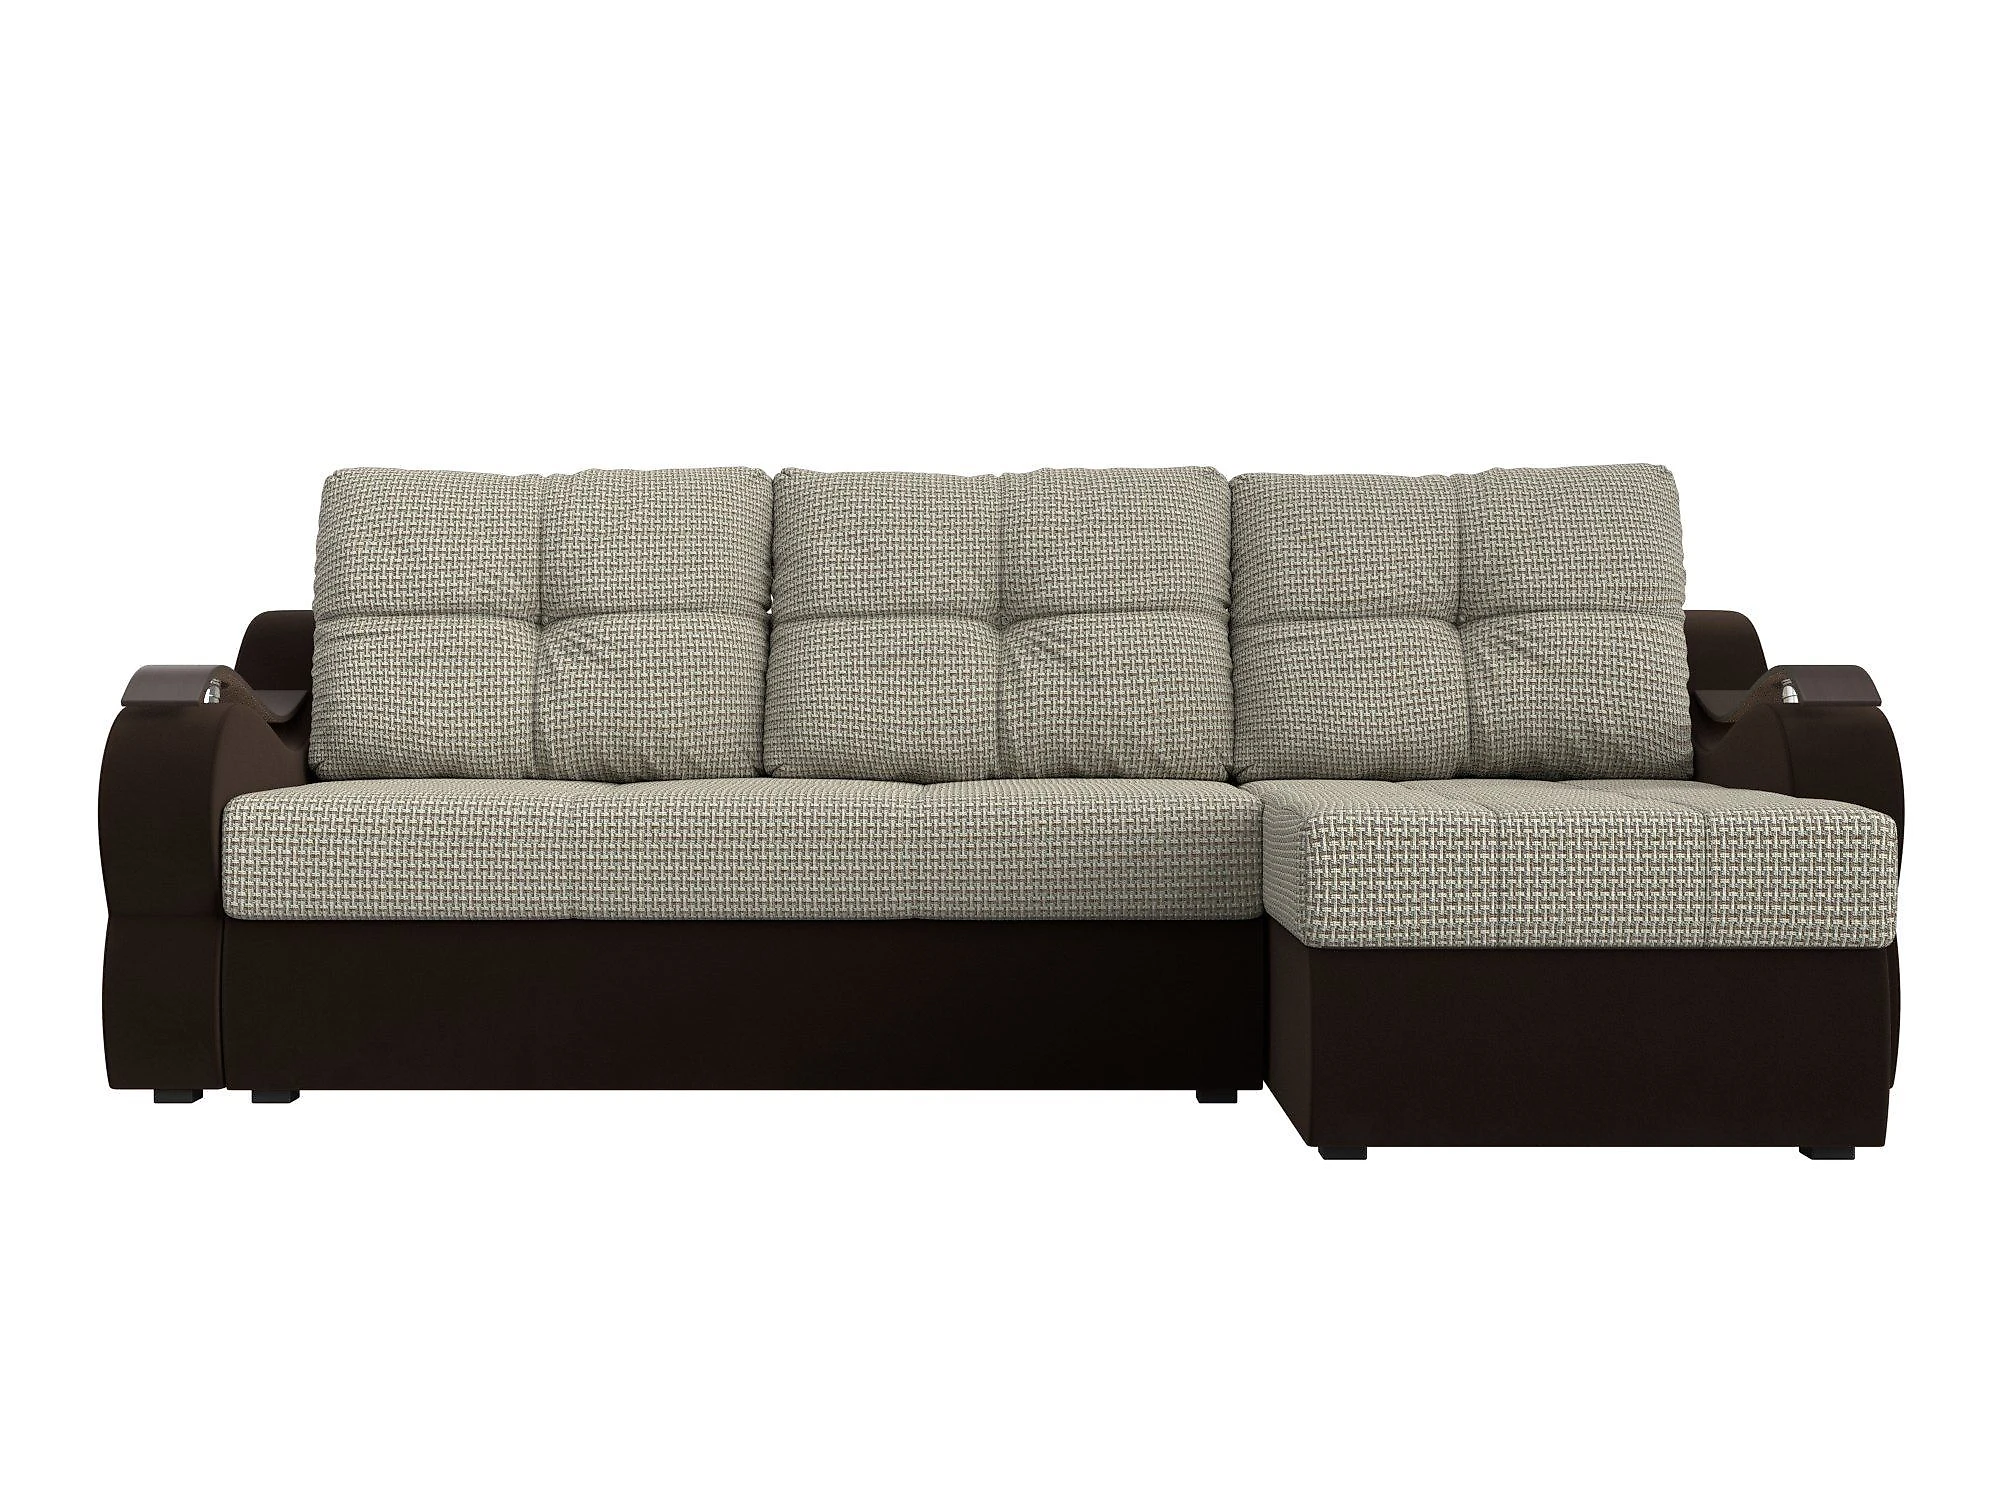  угловой диван из рогожки Меркурий Дизайн 9